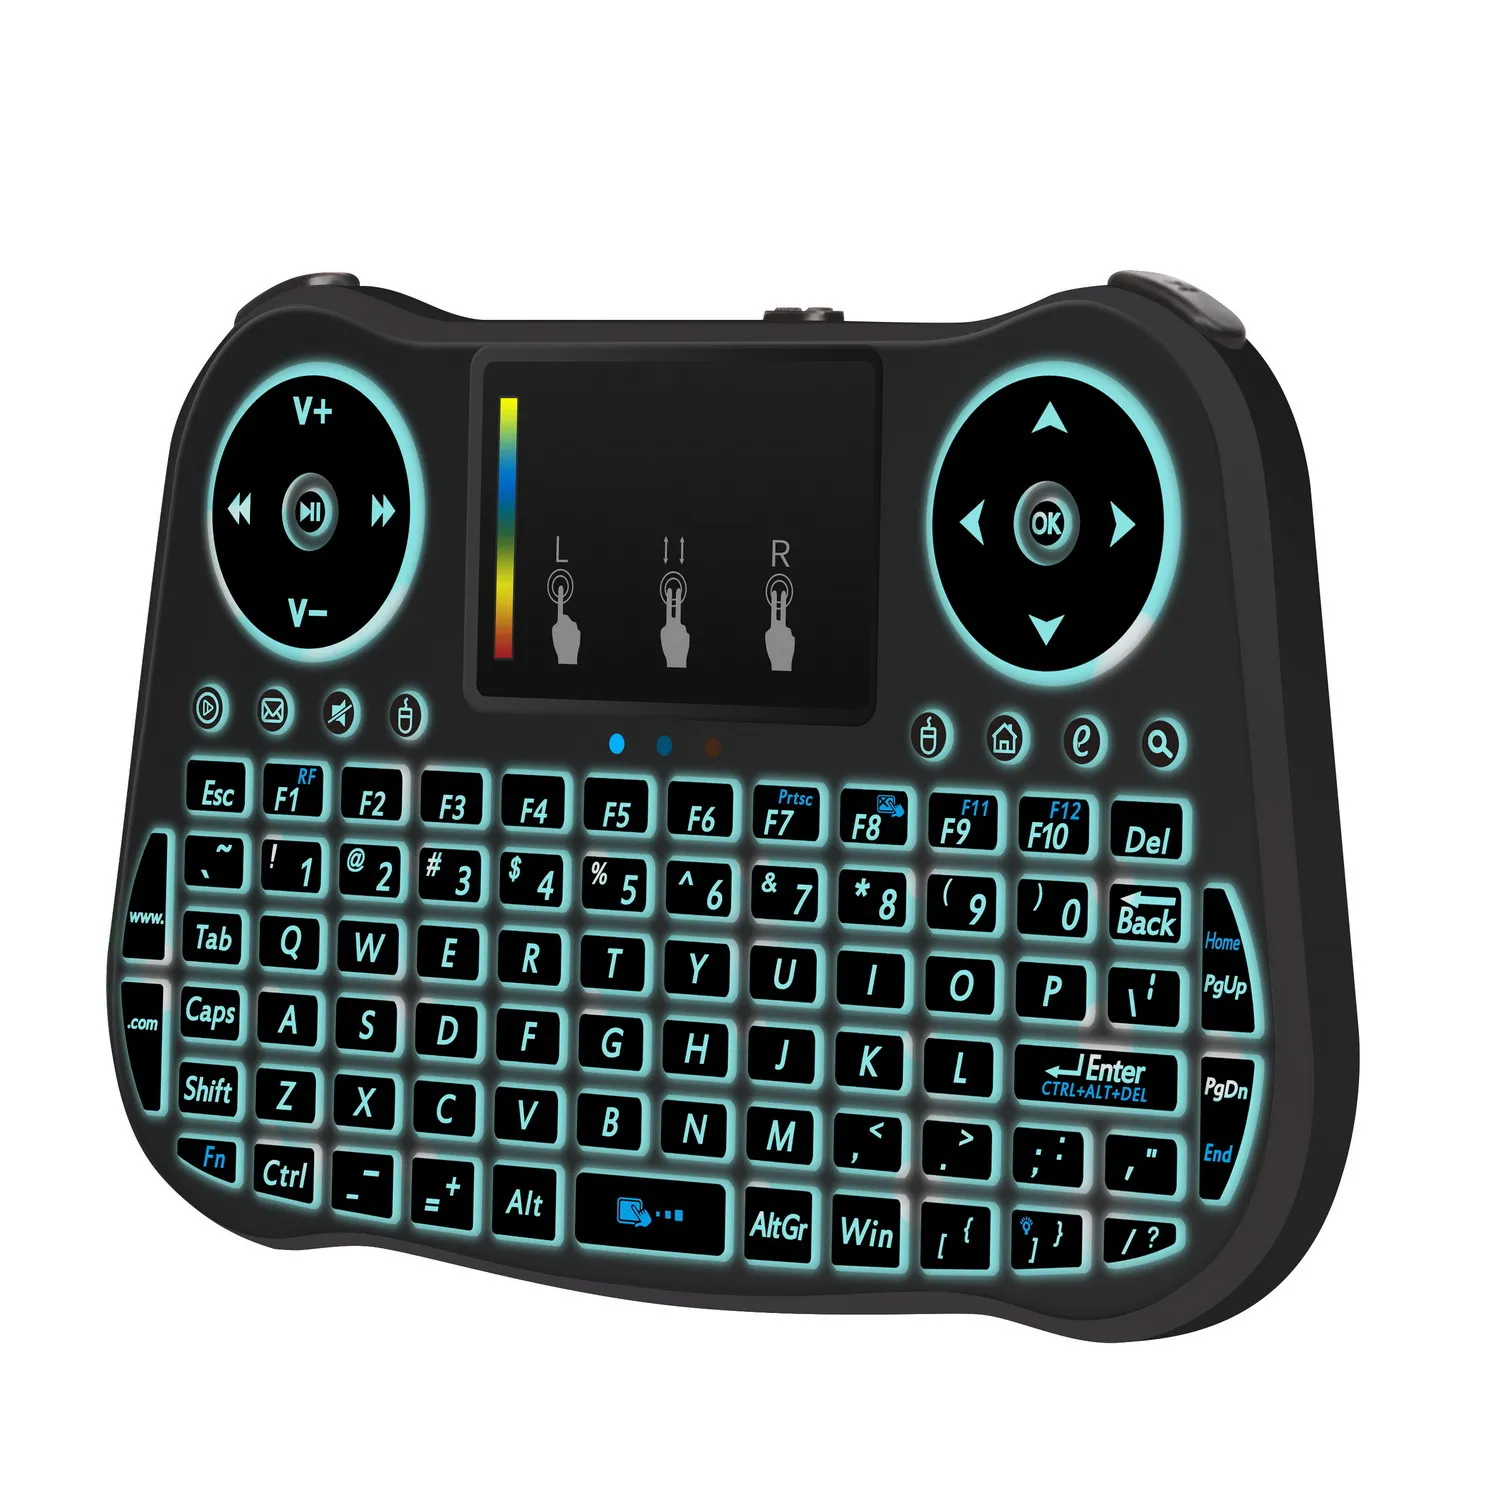 MINI MT08 tastiera wireless da 2,4 GHz i retroilluminato inglese telecomando Touchpad Android TV Box Tablet PC Smart TV PK i8